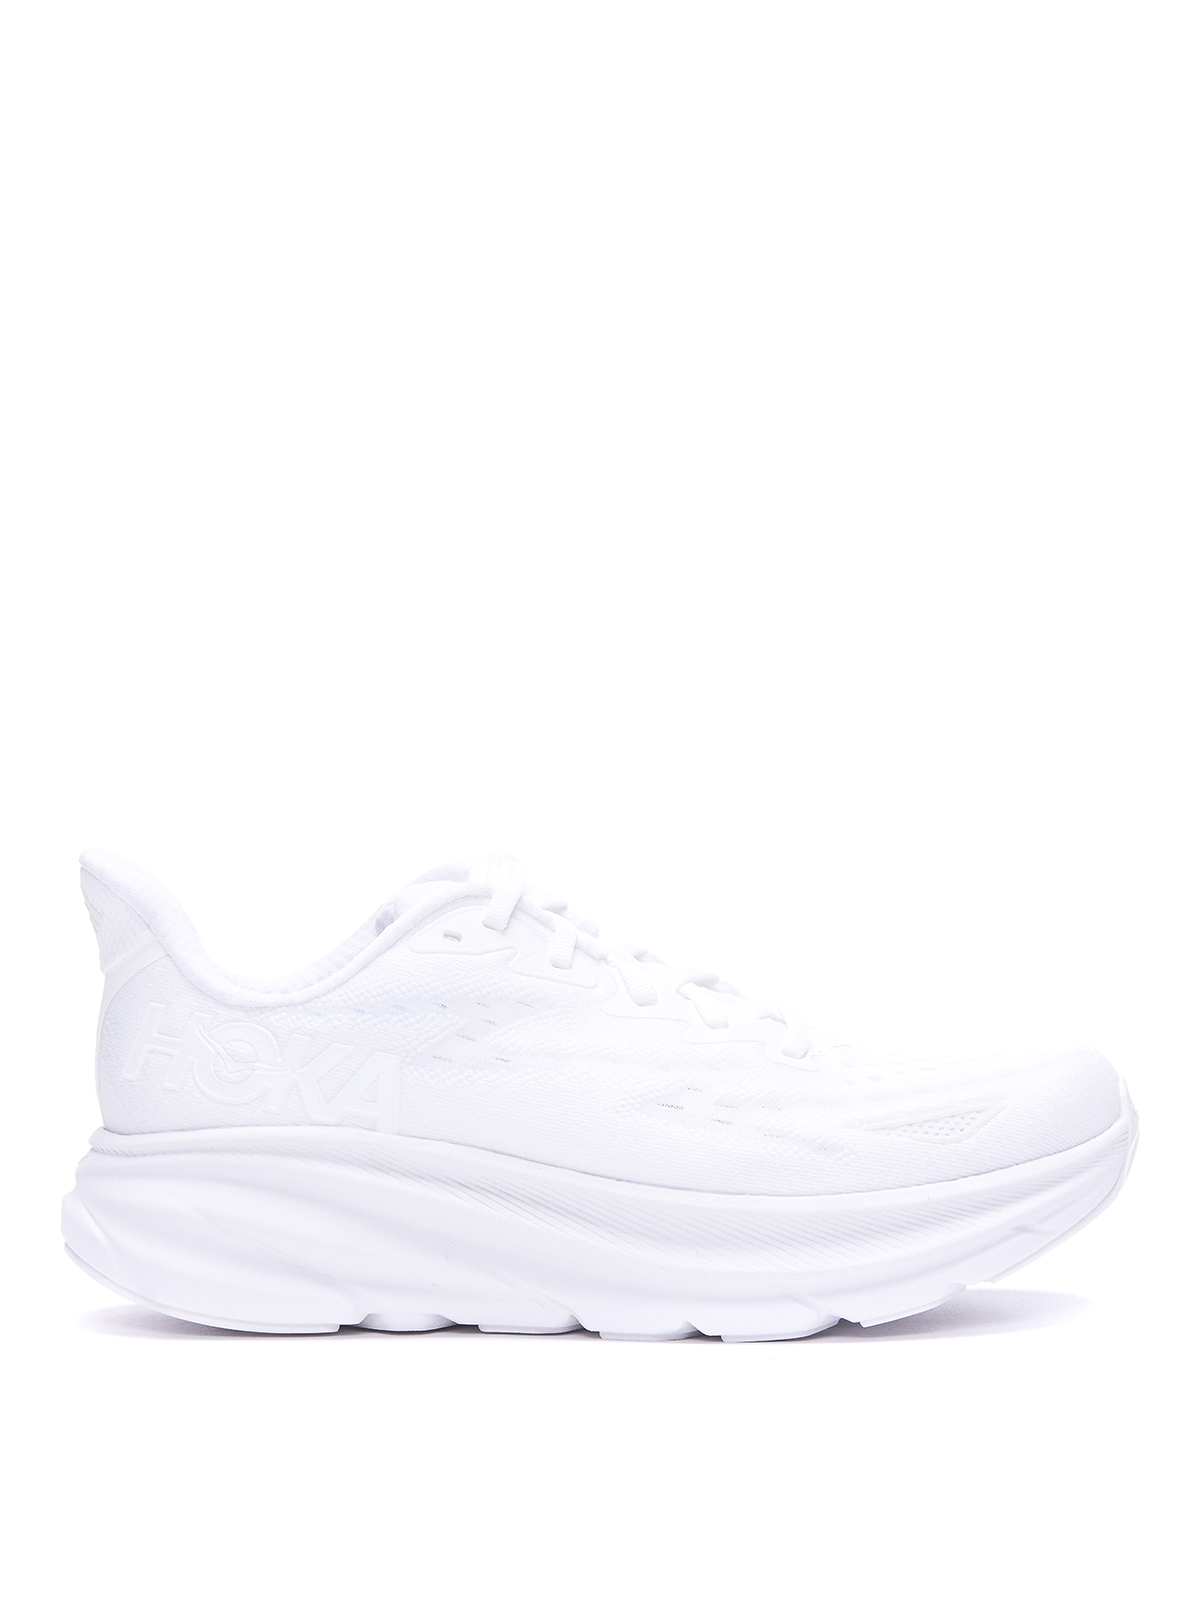 Hoka Clifton Sneakers In White